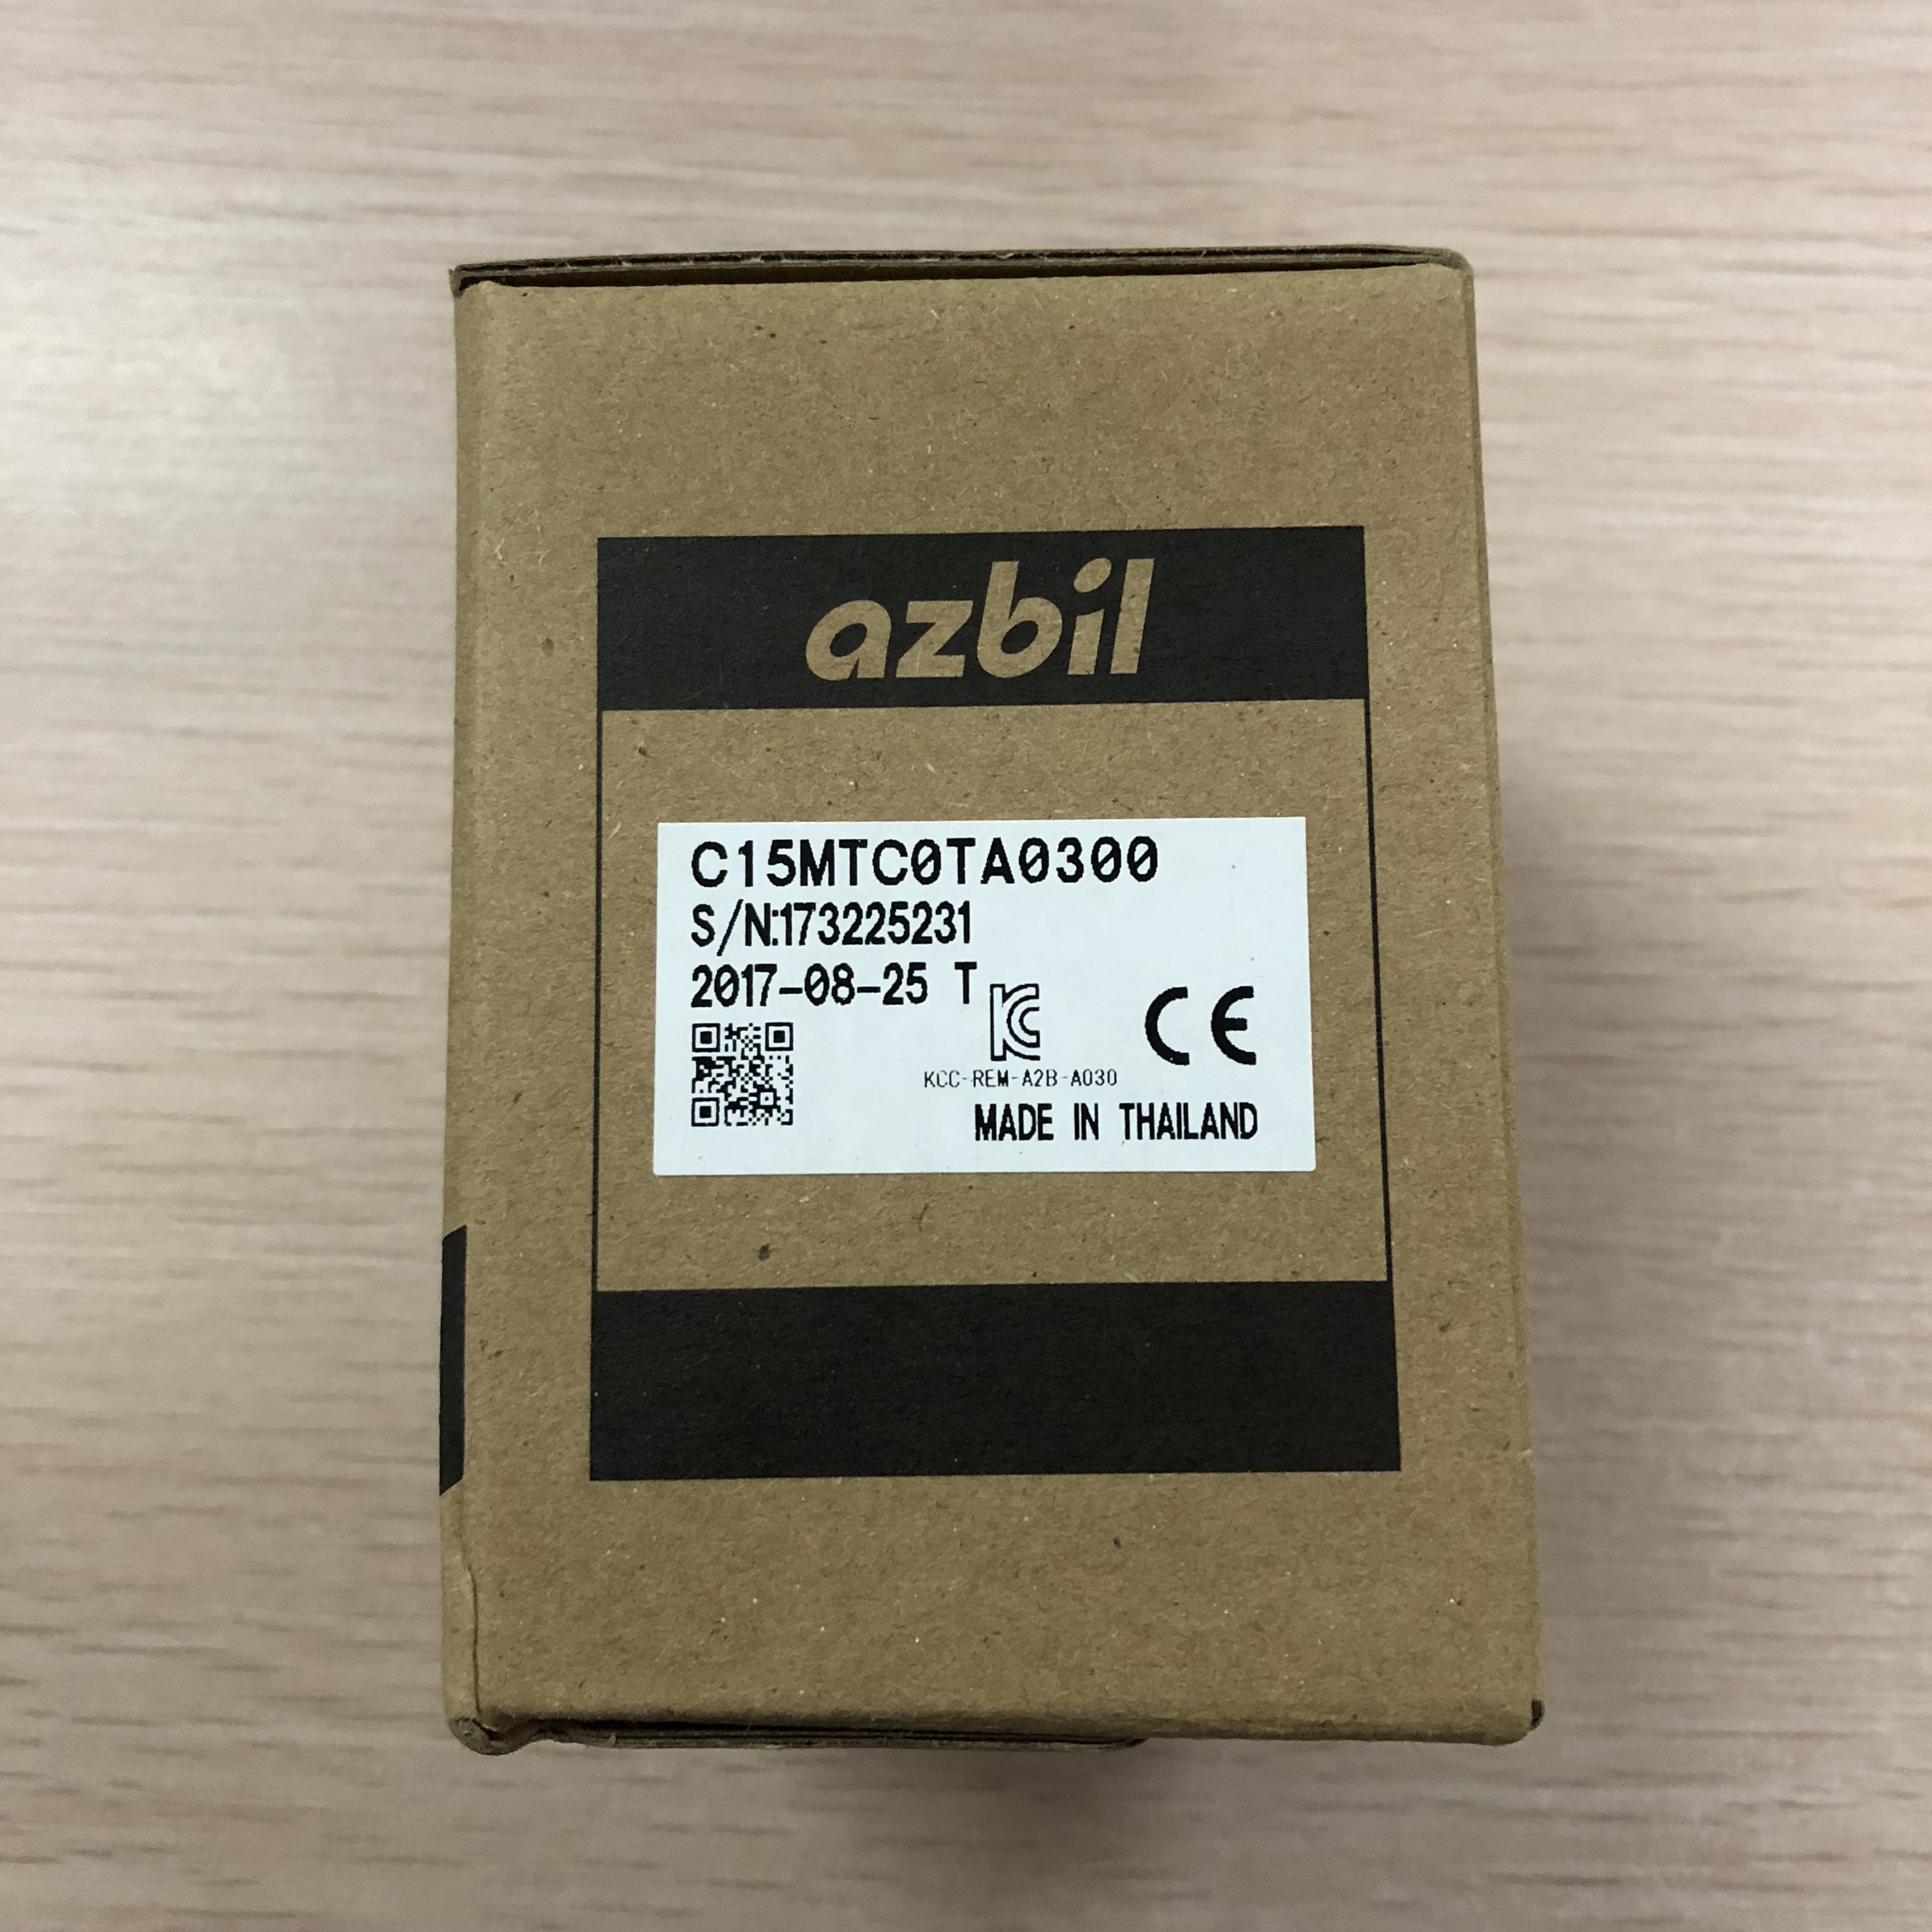 山武温控器AZBIL数字显示温控器C15MTC0TA0300